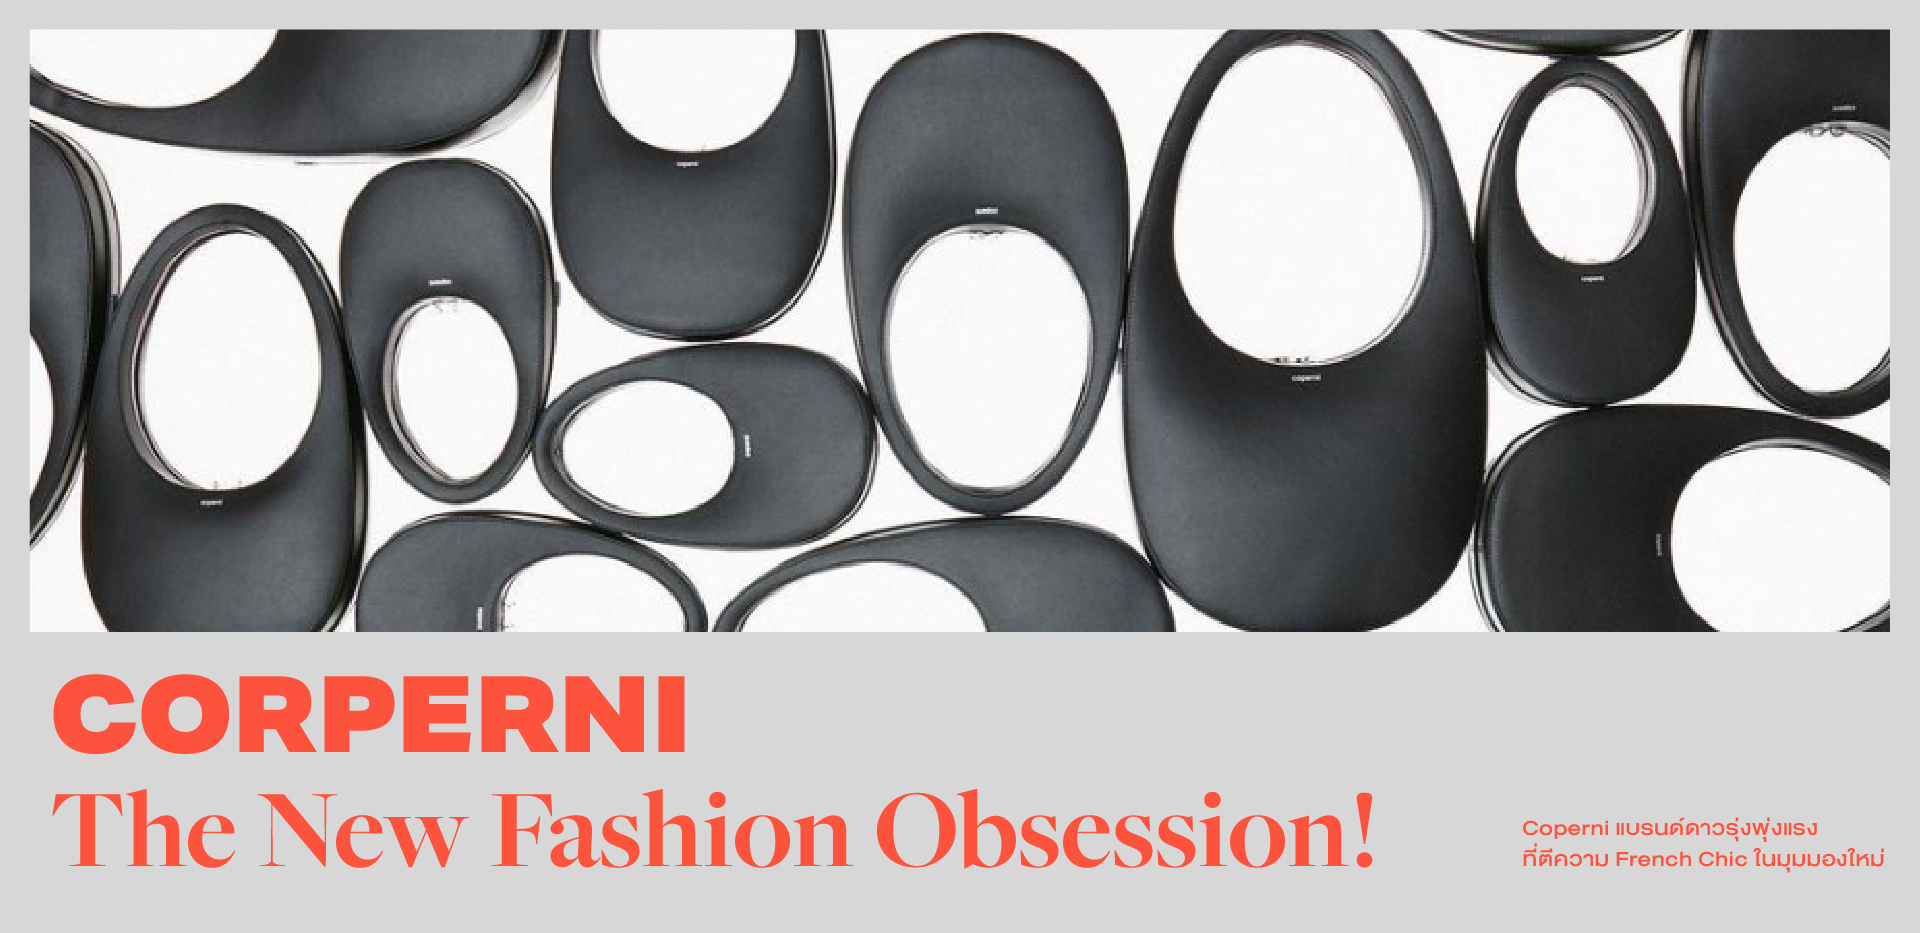 ‘Corperni’ The New Fashion Obsession! ทำความรู้จัก Coperni แบรนด์สุดฮอตแห่งพ.ศ.นี้